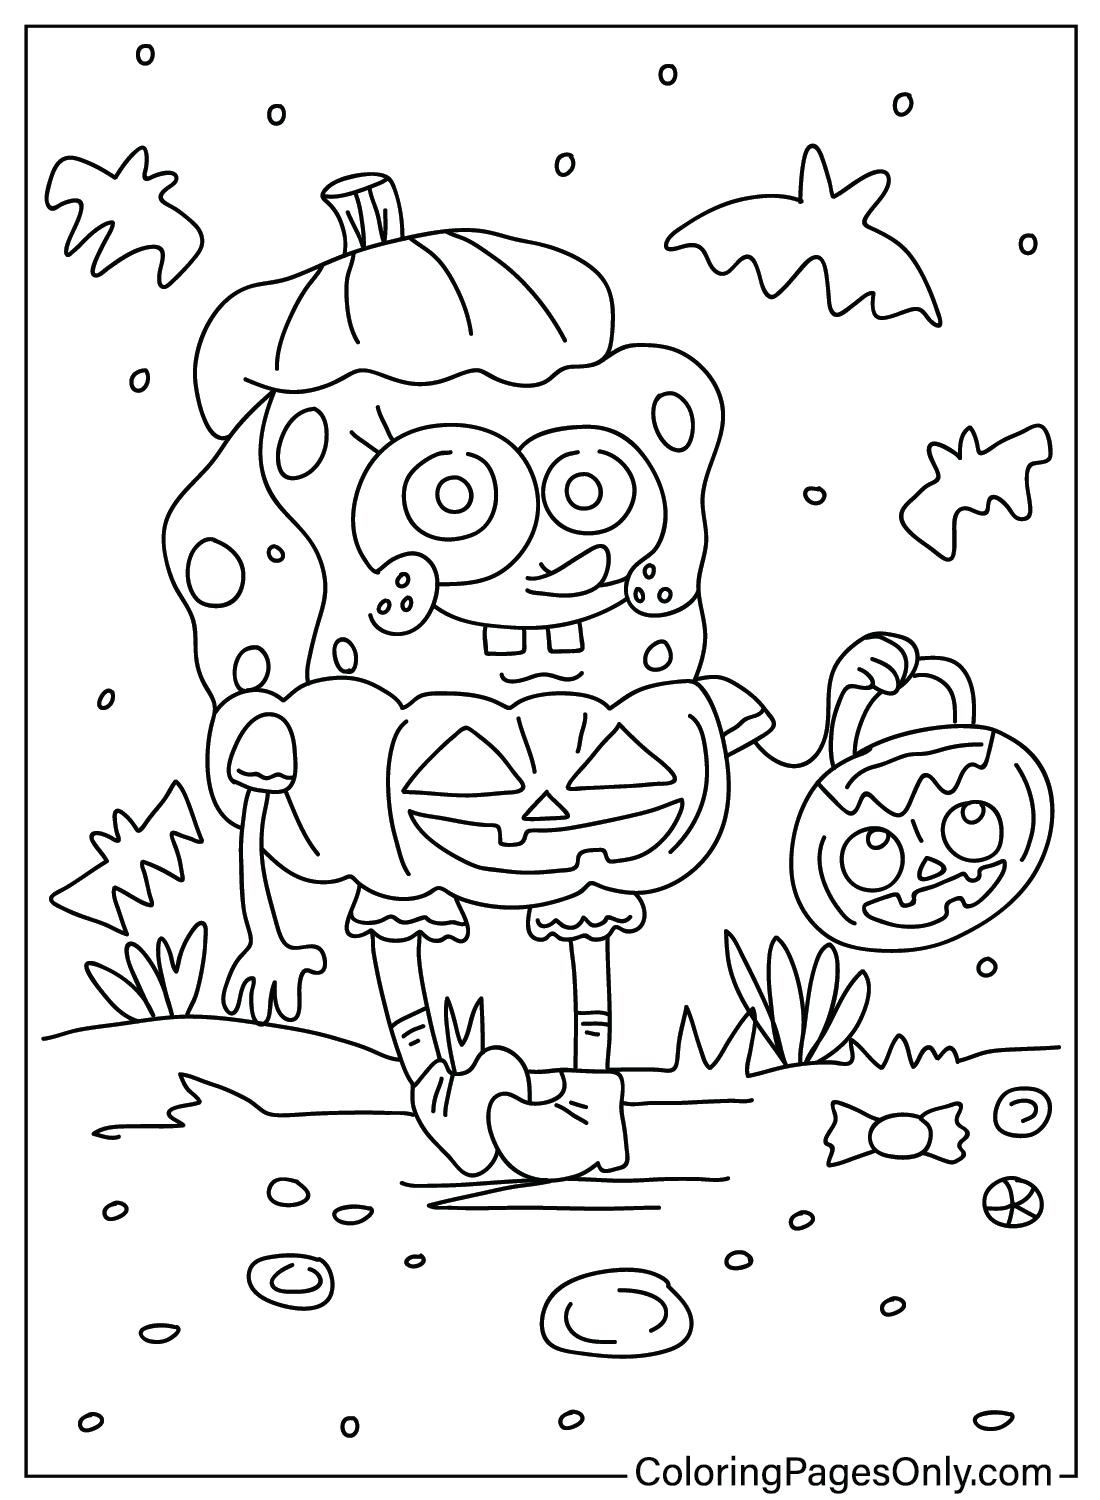 Раскраска Губка Боб Хэллоуин из мультфильма «Губка Боб Хэллоуин»